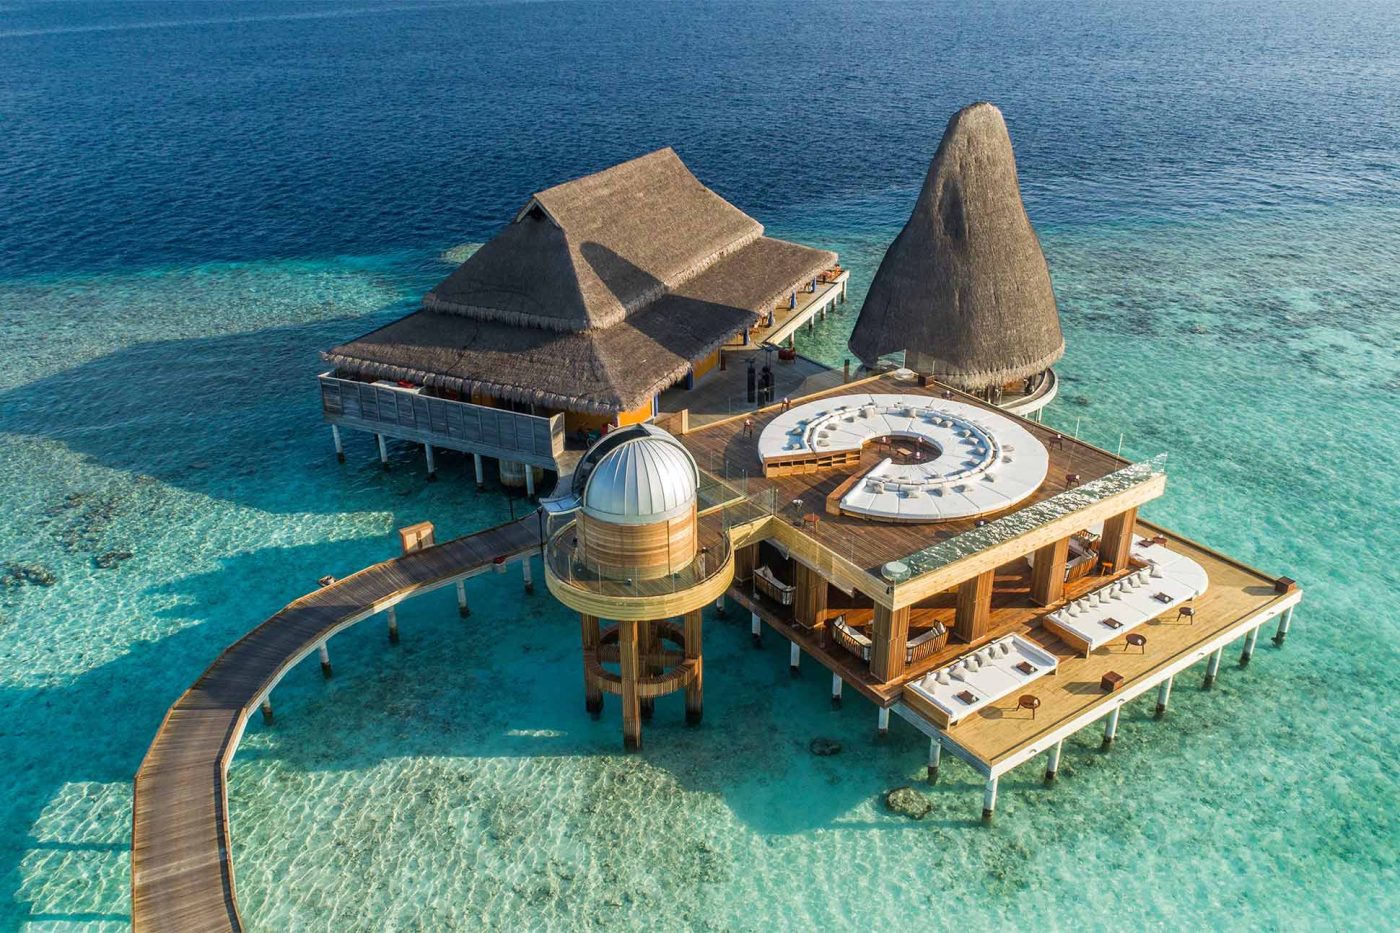 anantara-kihavah-maldives-villas-in-maldives